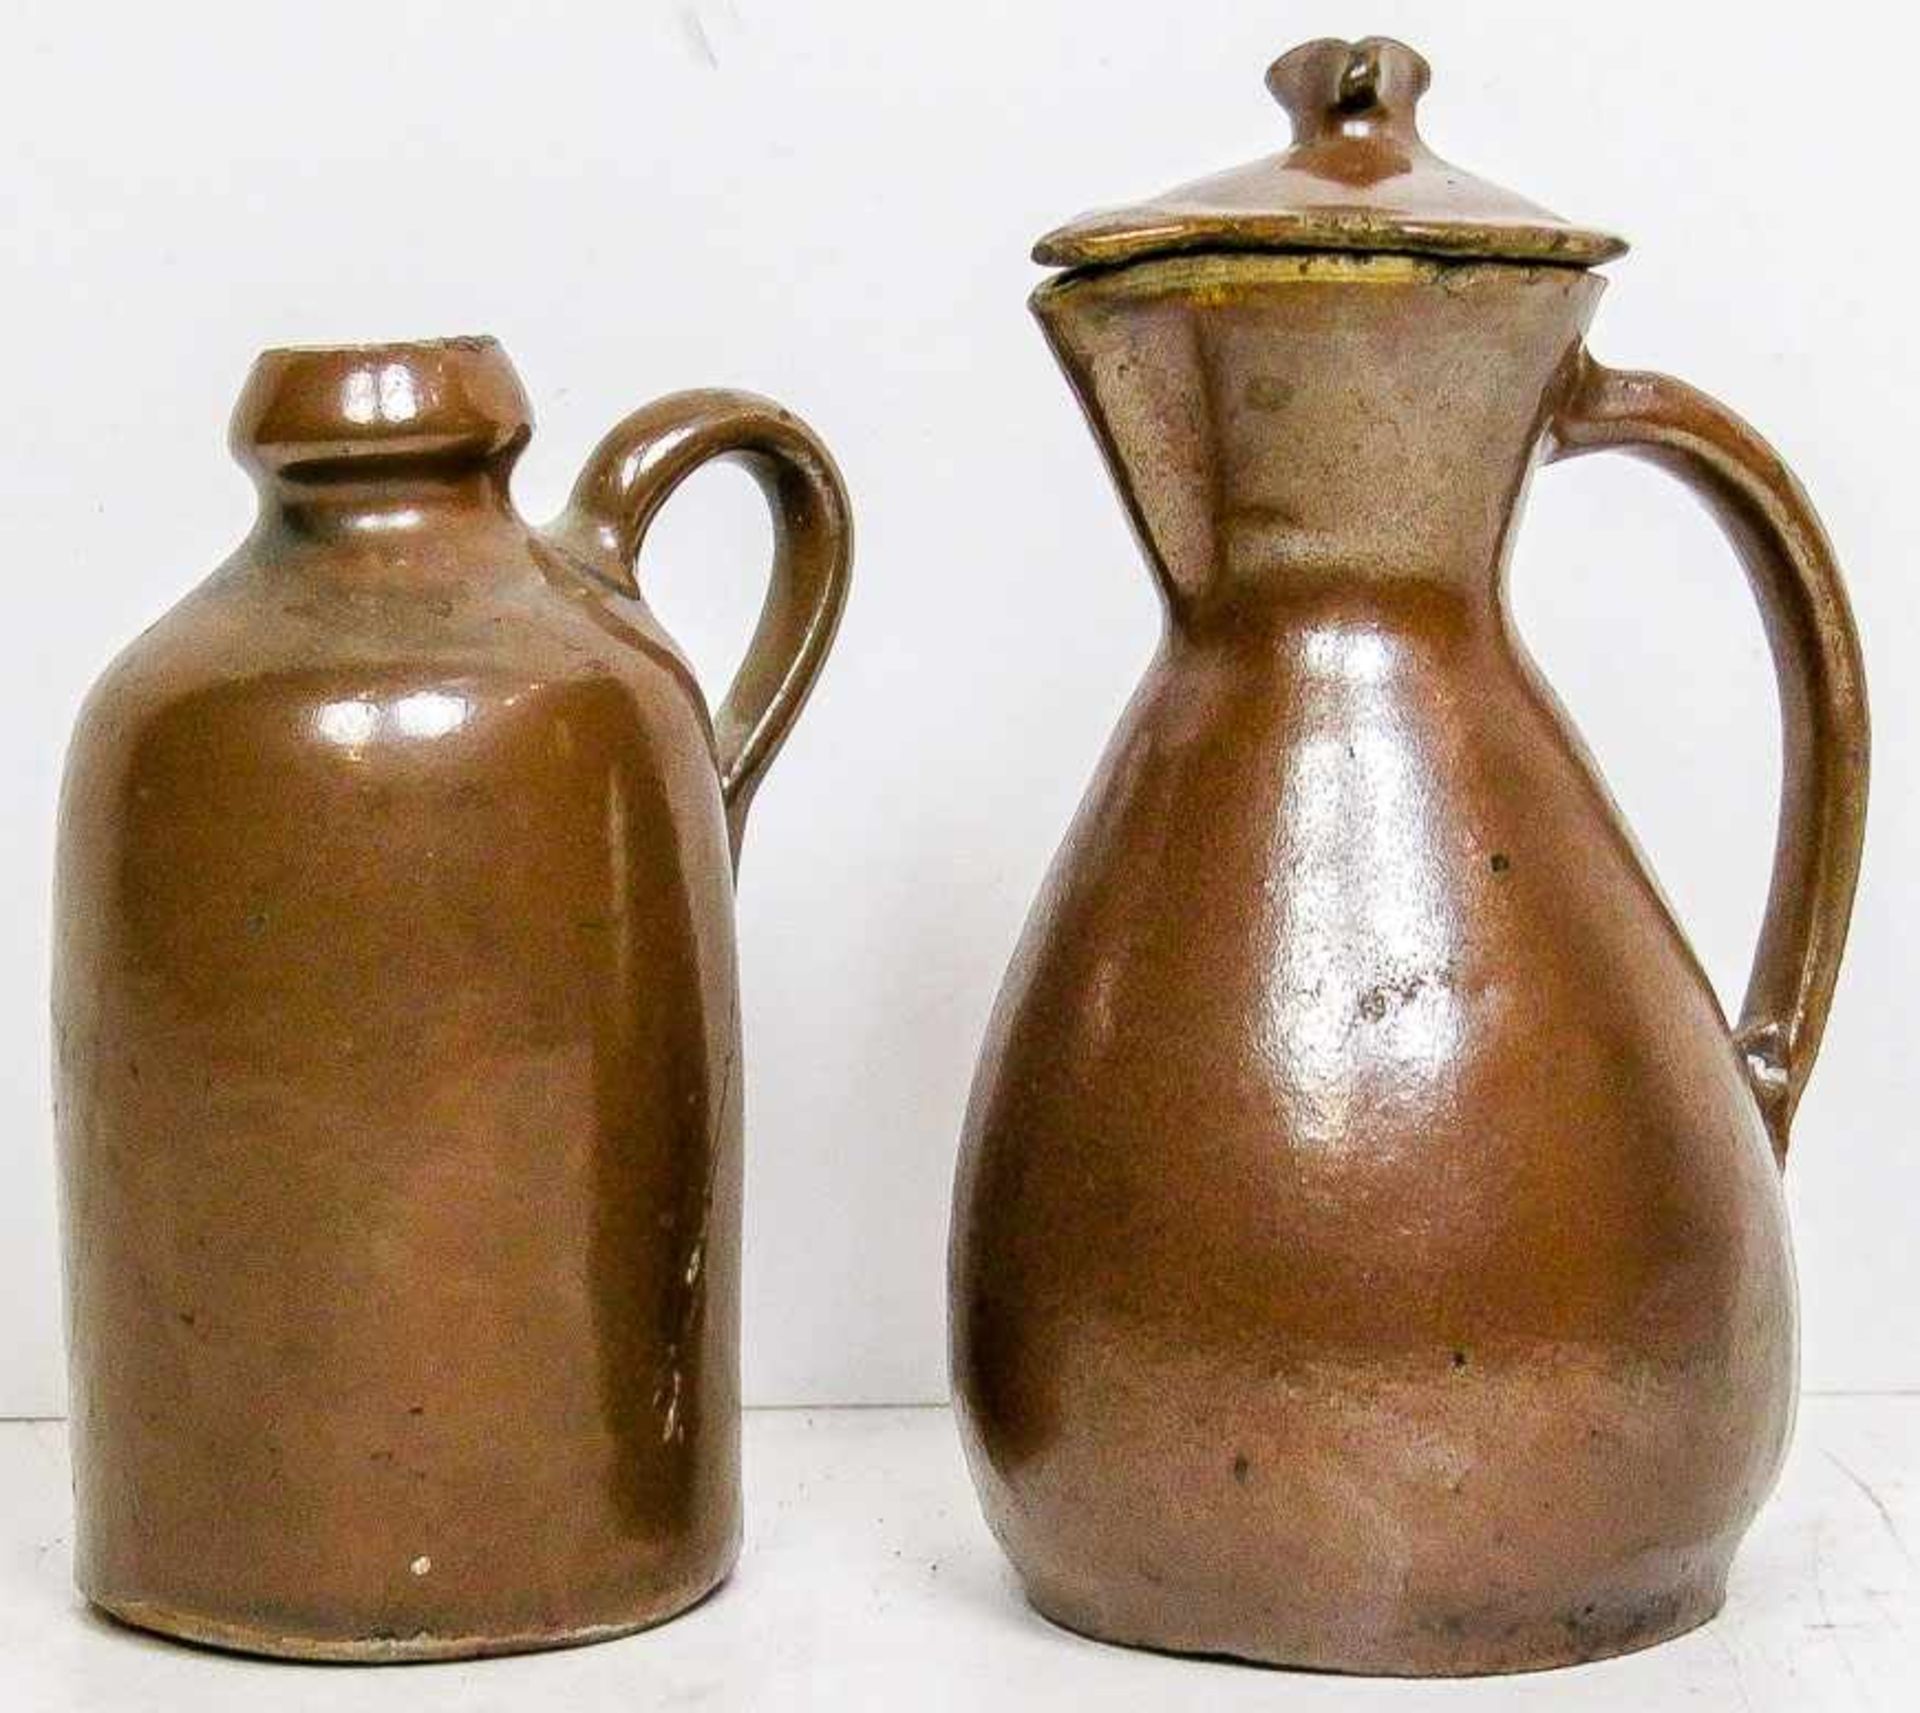 Kl. Kanne und Deckelkännchen.Bunzlau, 19. Jh.Steinzeug. Braune Lehmglasur. H. 12,5 bzw. 15 cm. (